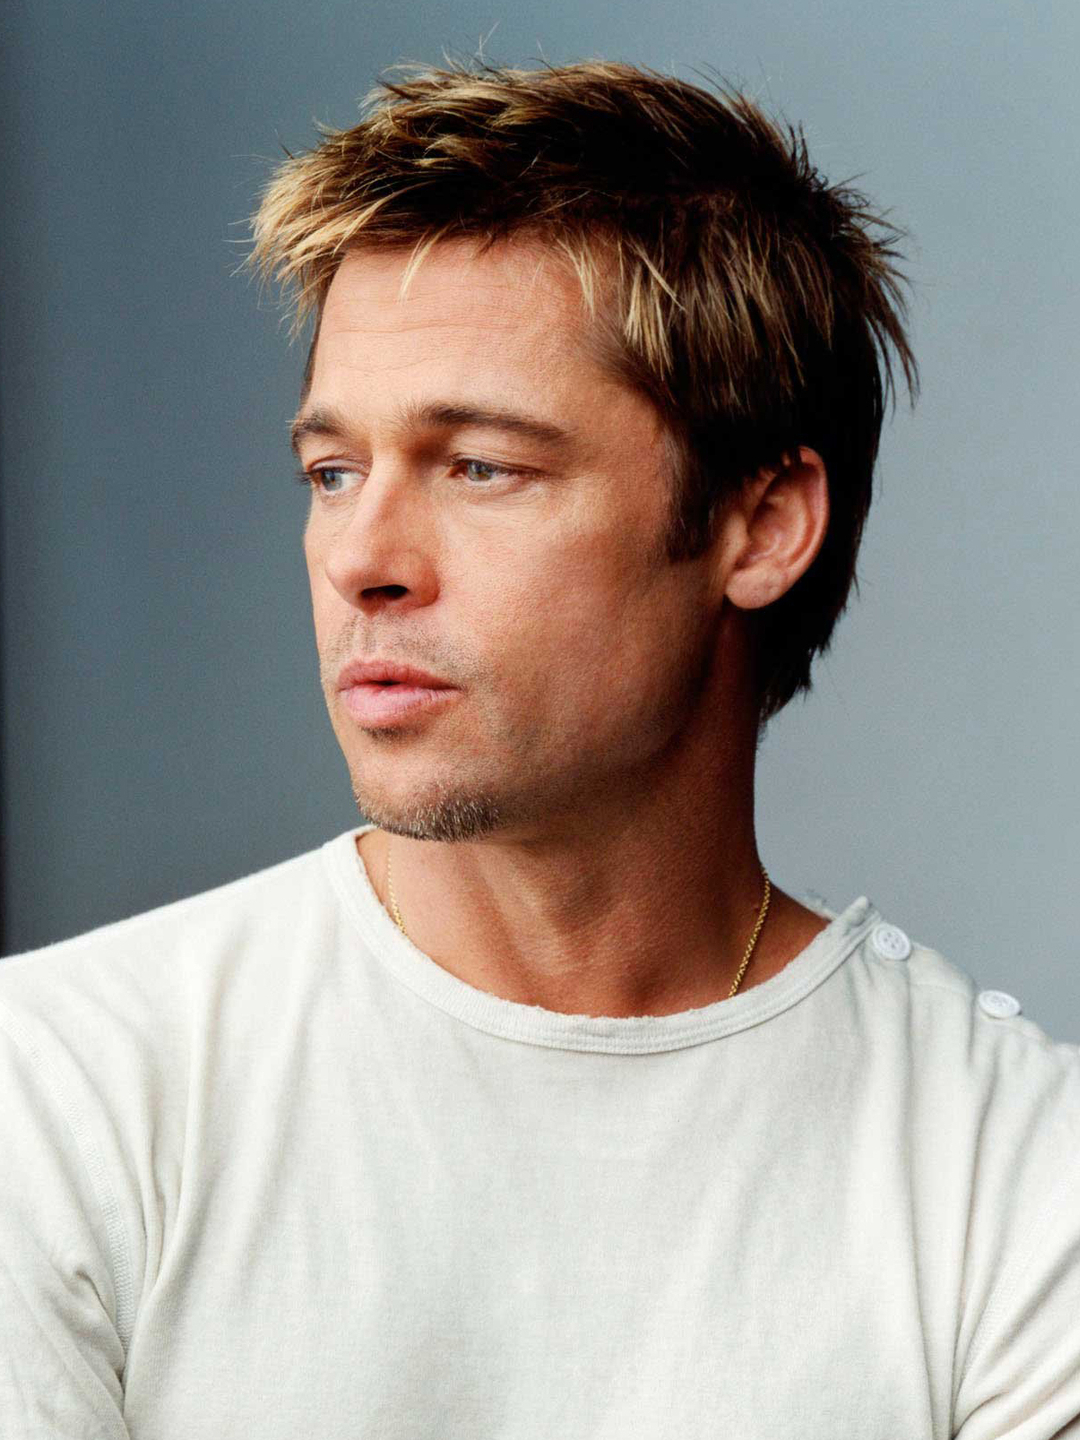 Brad Pitt early life